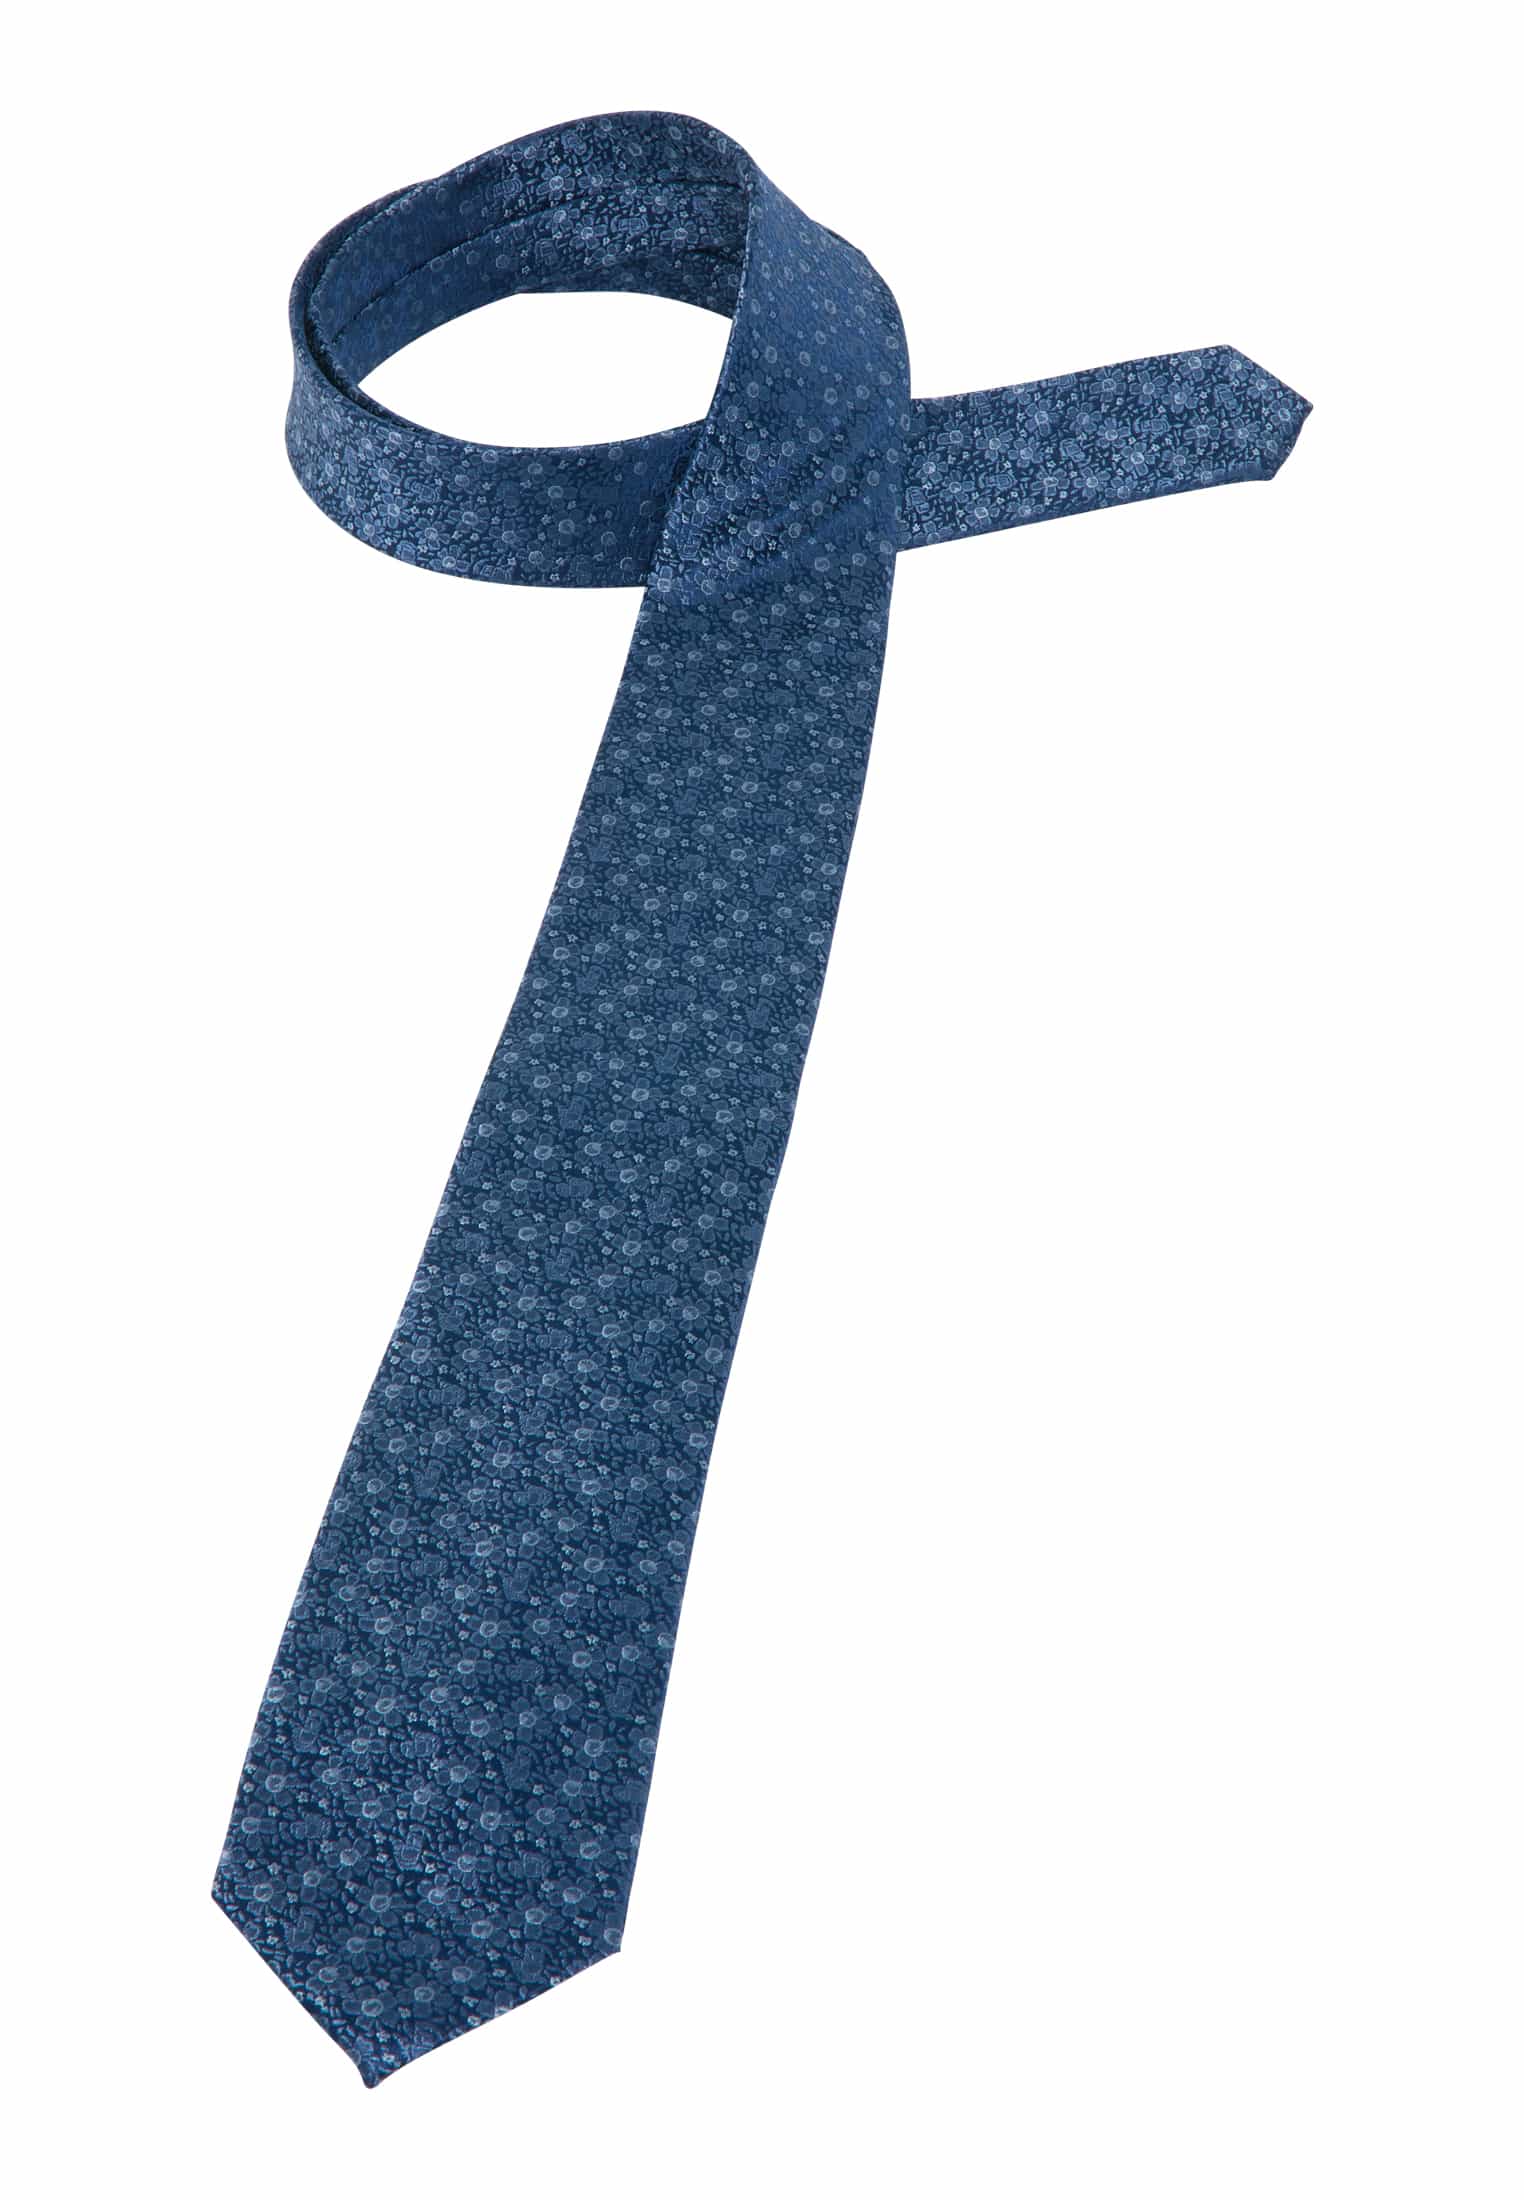 Krawatte in blau gemustert 1AC01877-01-41-142 | blau 142 | 